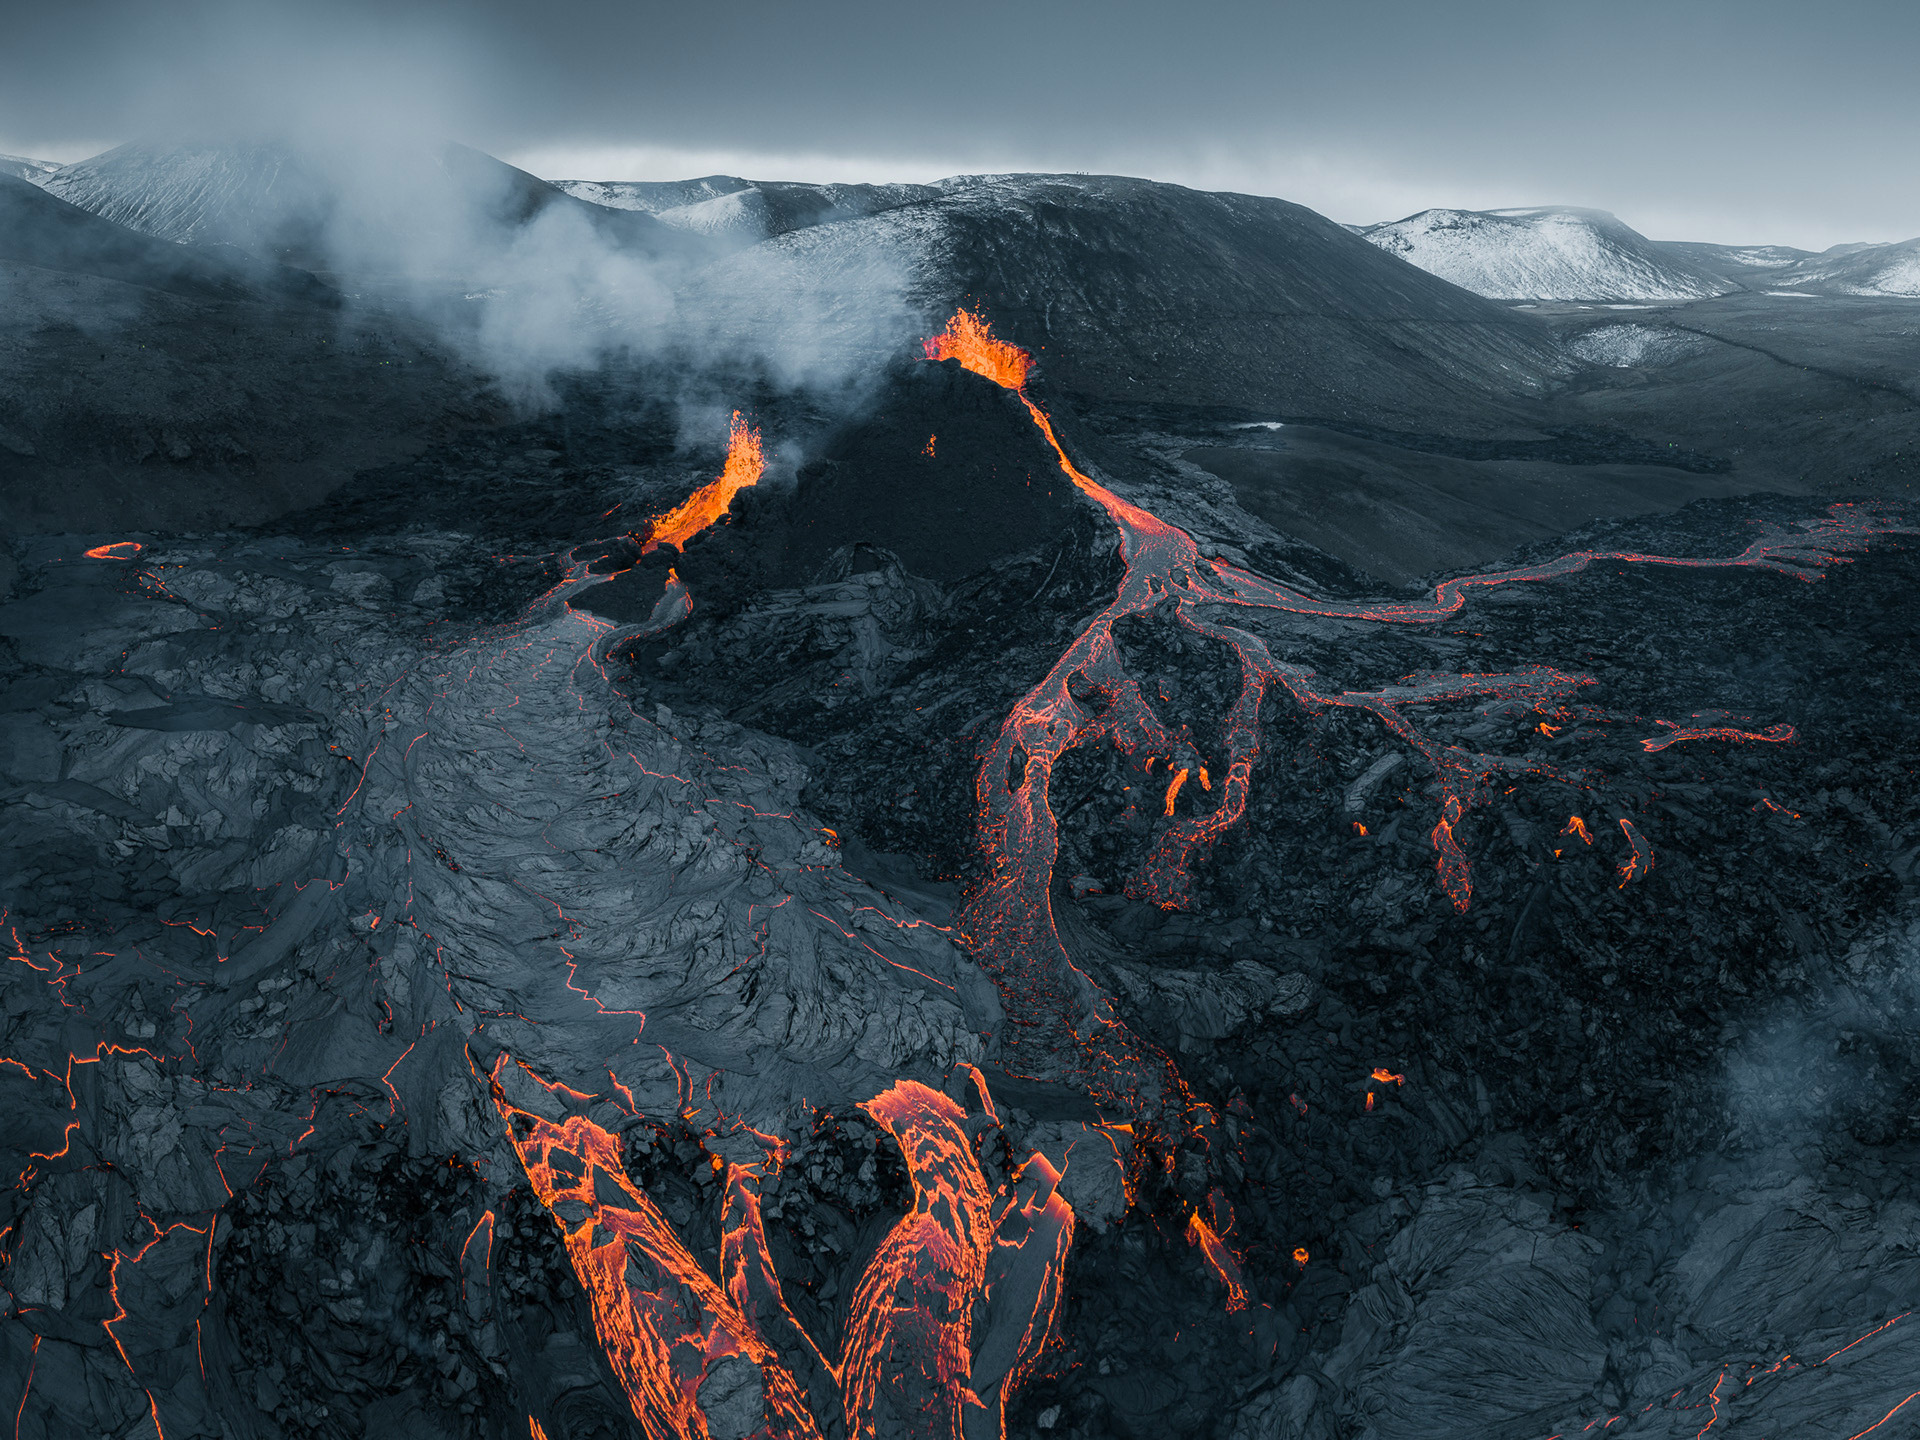 摄影师用航拍照片捕捉到了冰岛火山爆发时的壮观场景